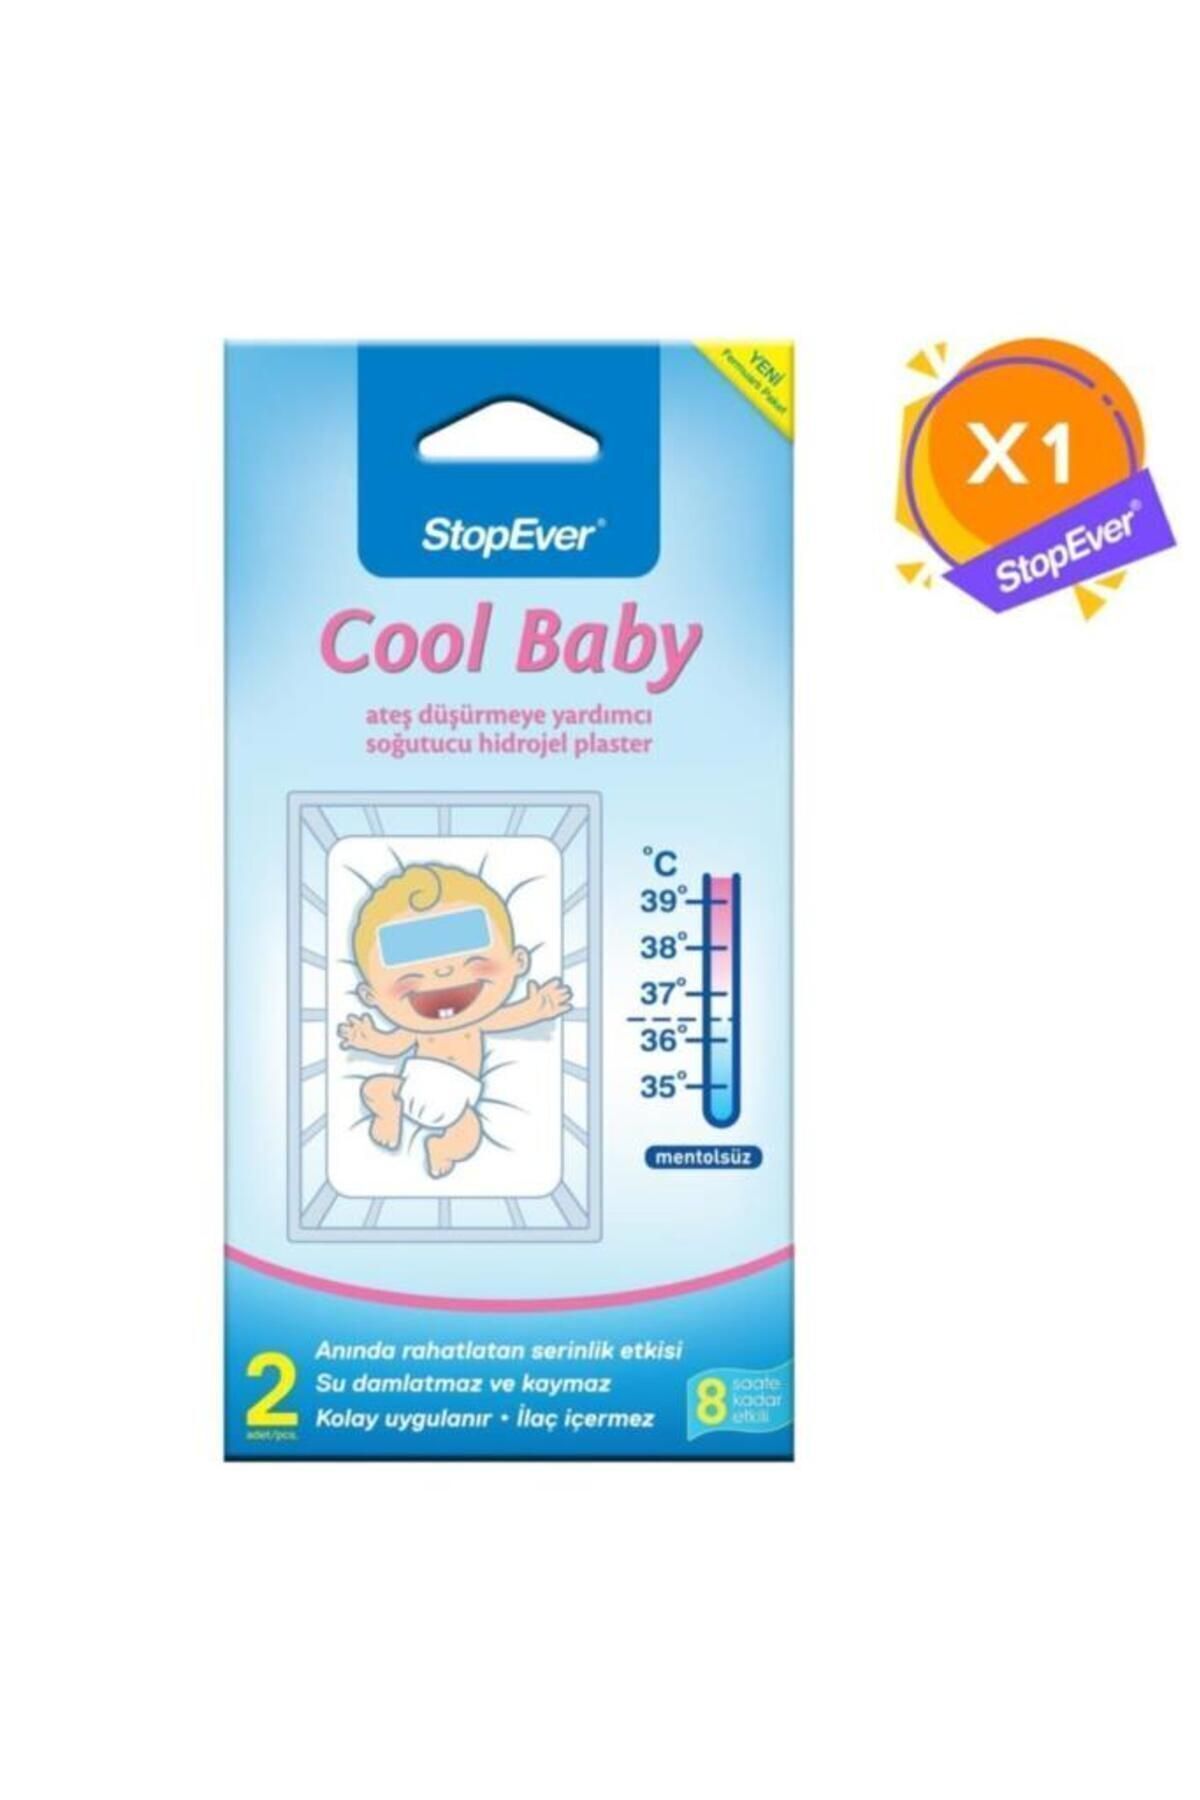 StopEver Cool Baby Ateş Düşürmeye Yardımcı Soğutucu Hidrojel Plaster - 1 Adet